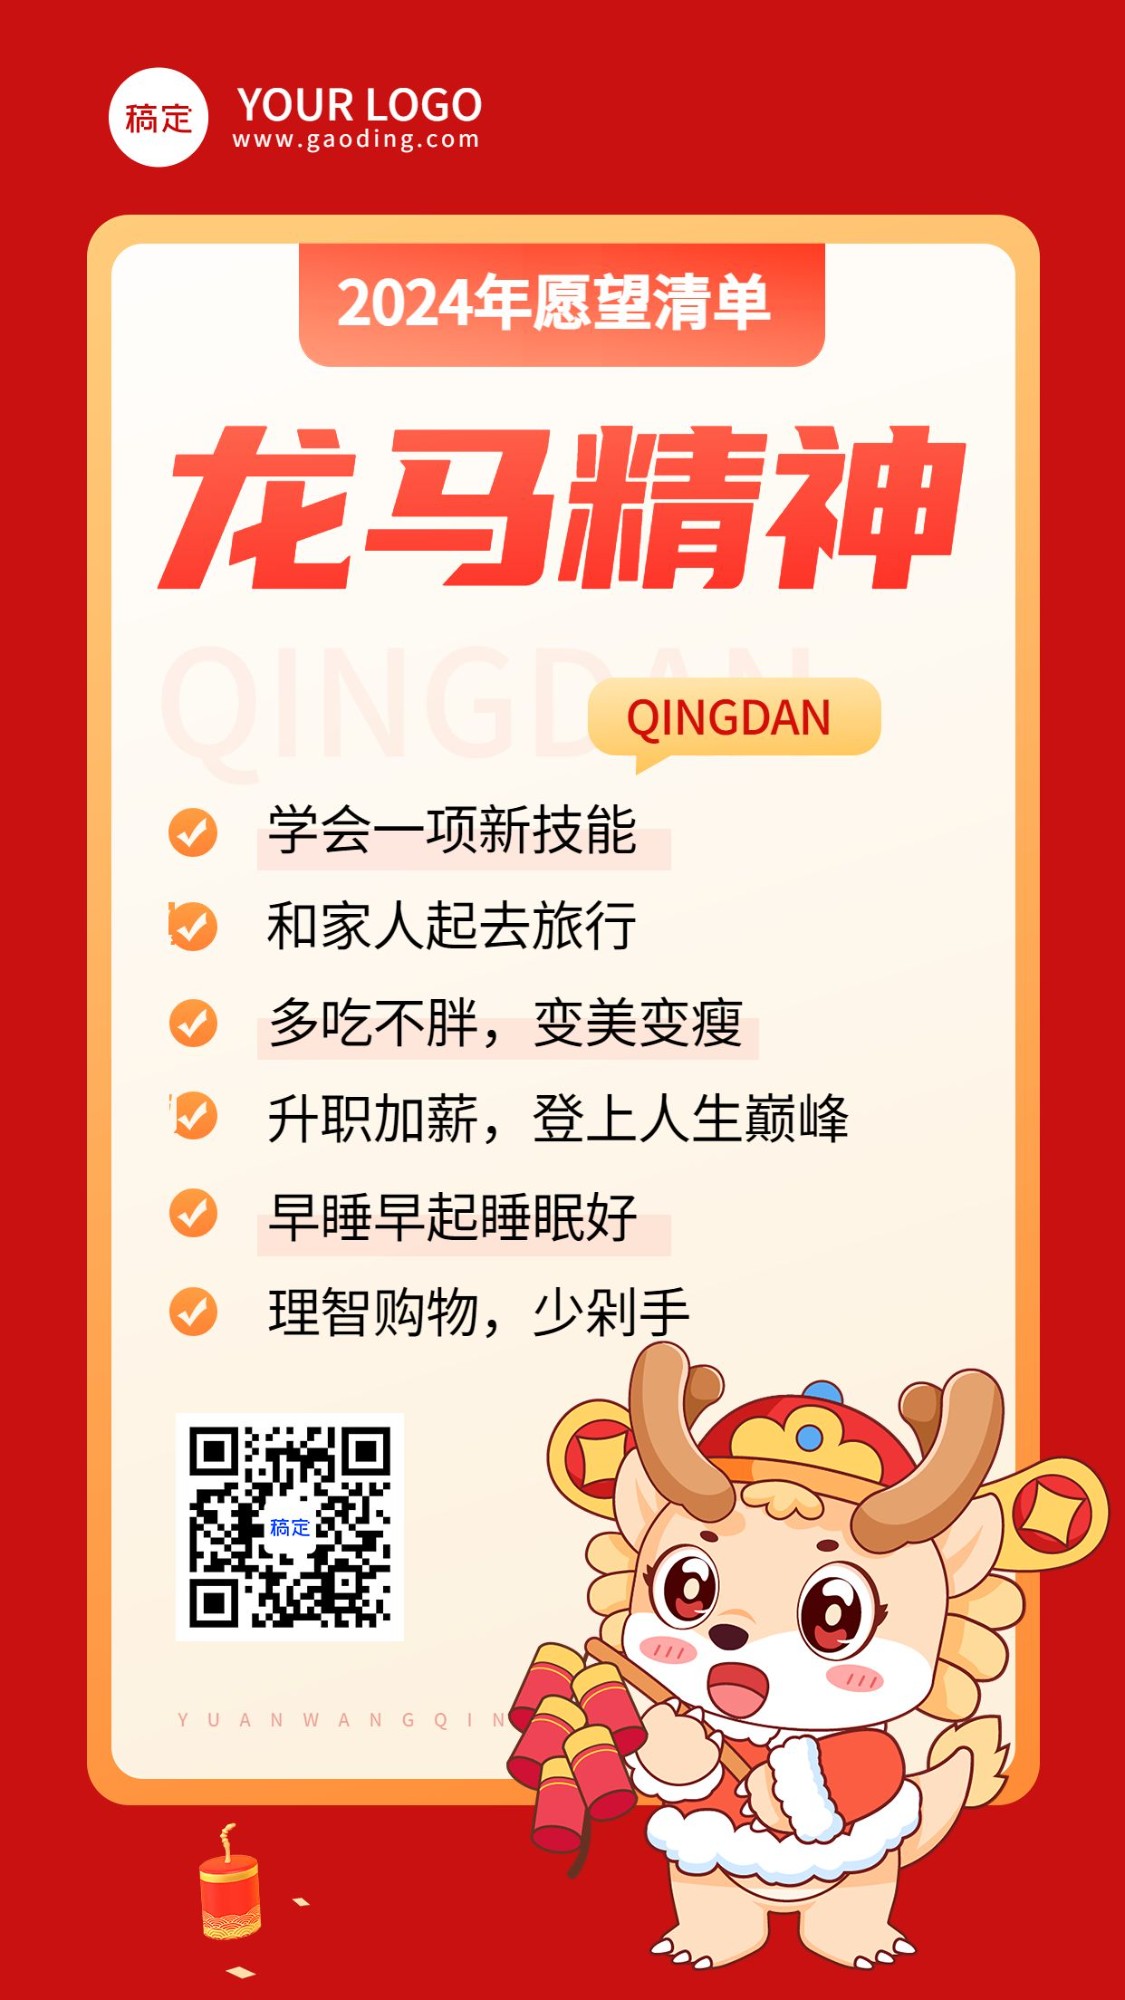 春节新年愿望清单手机海报预览效果